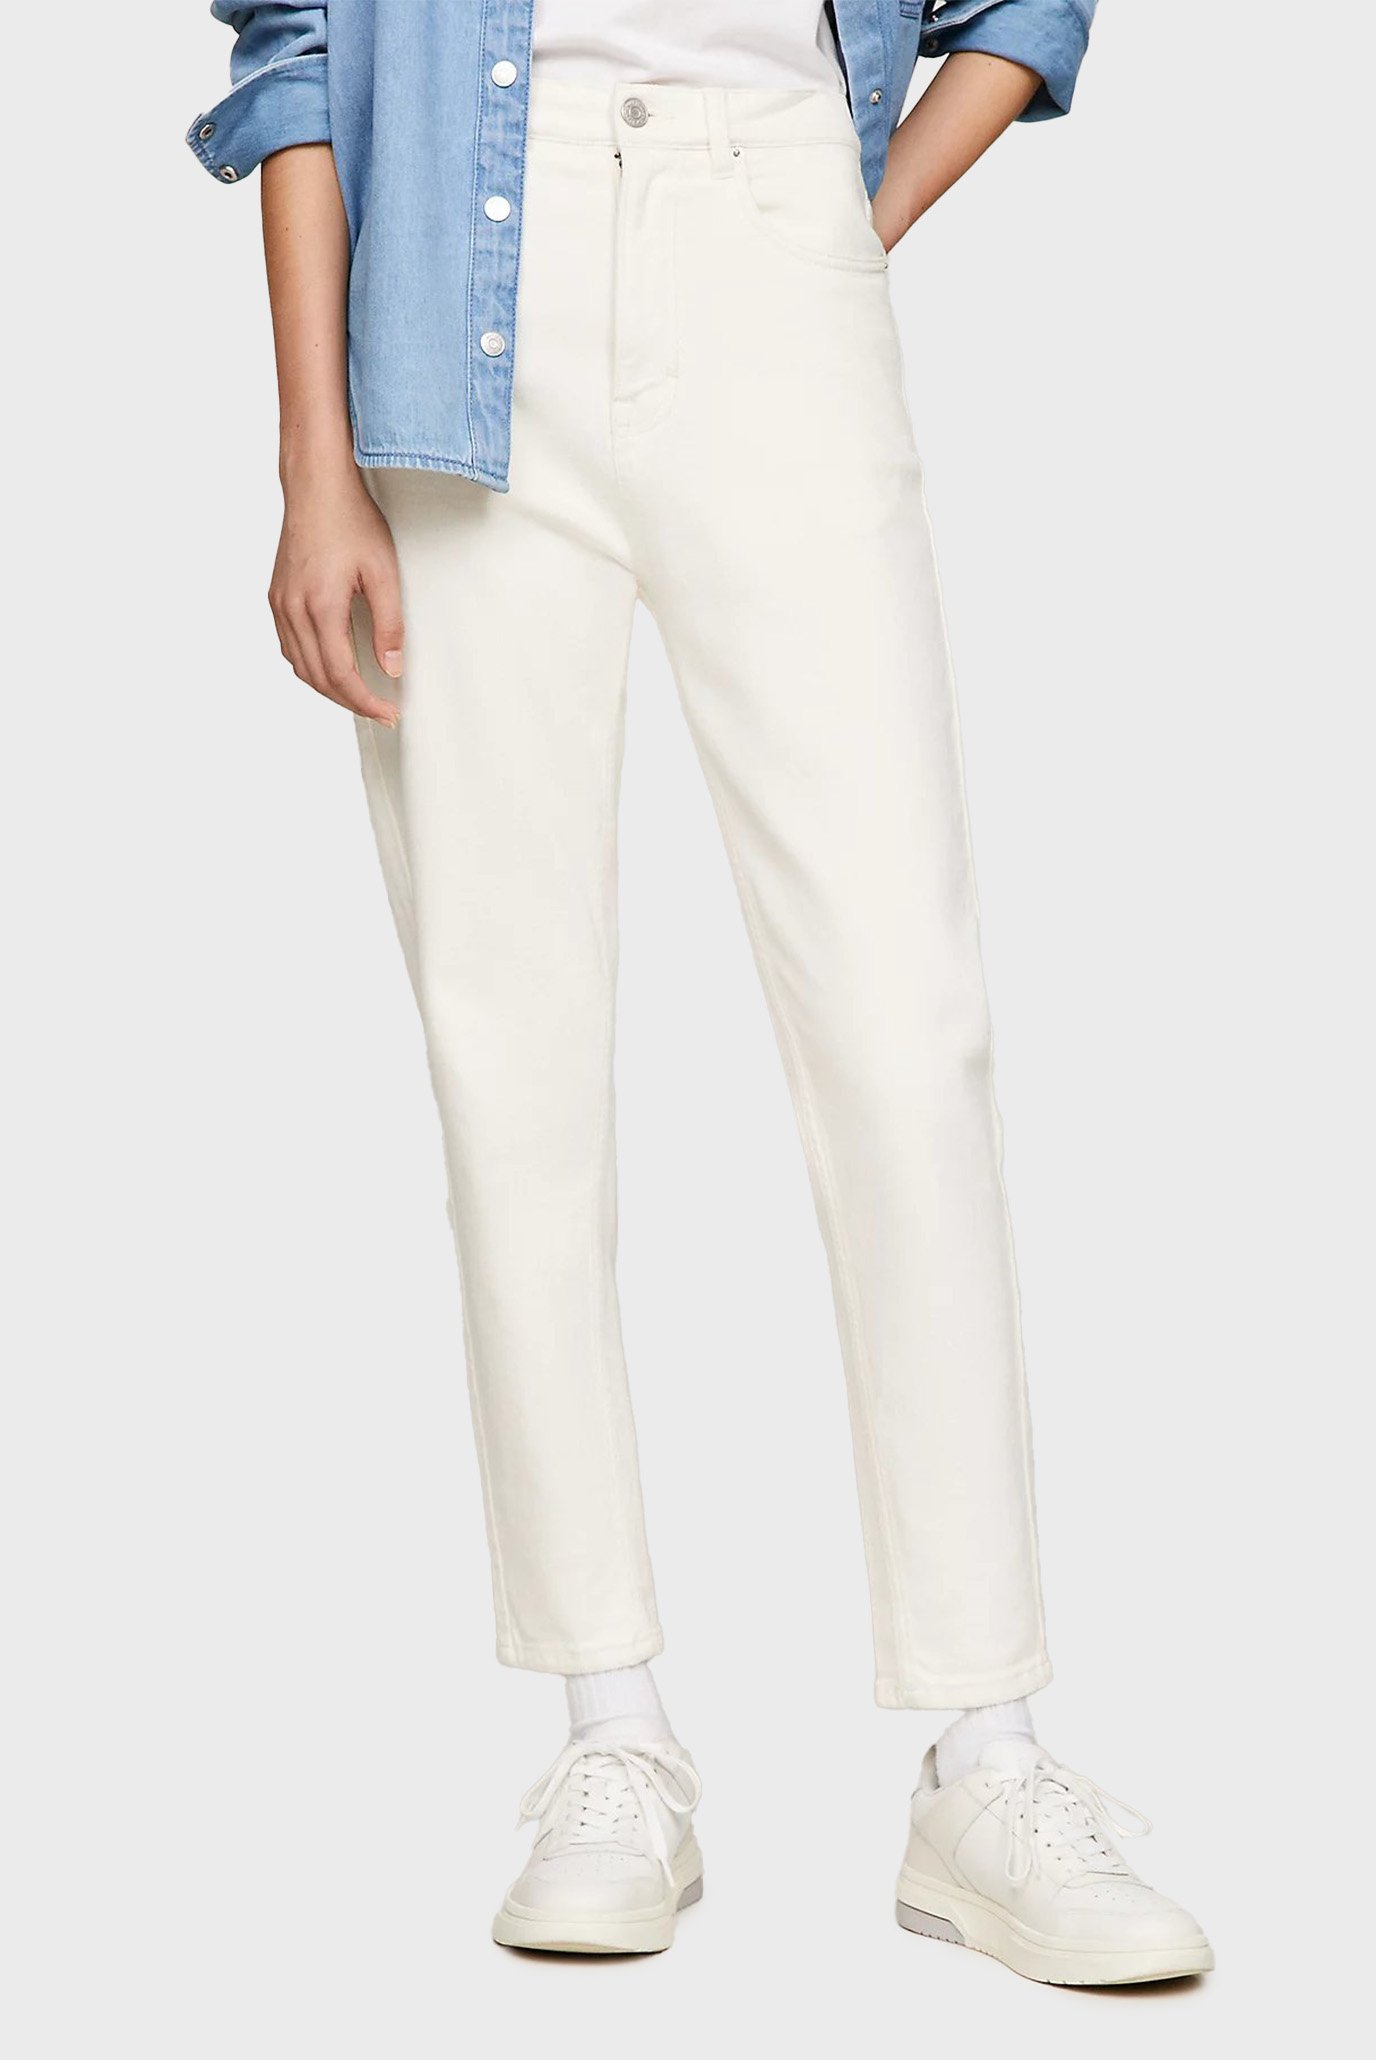 Жіночі білі джинси TJW MOM SLIM UH GD 1